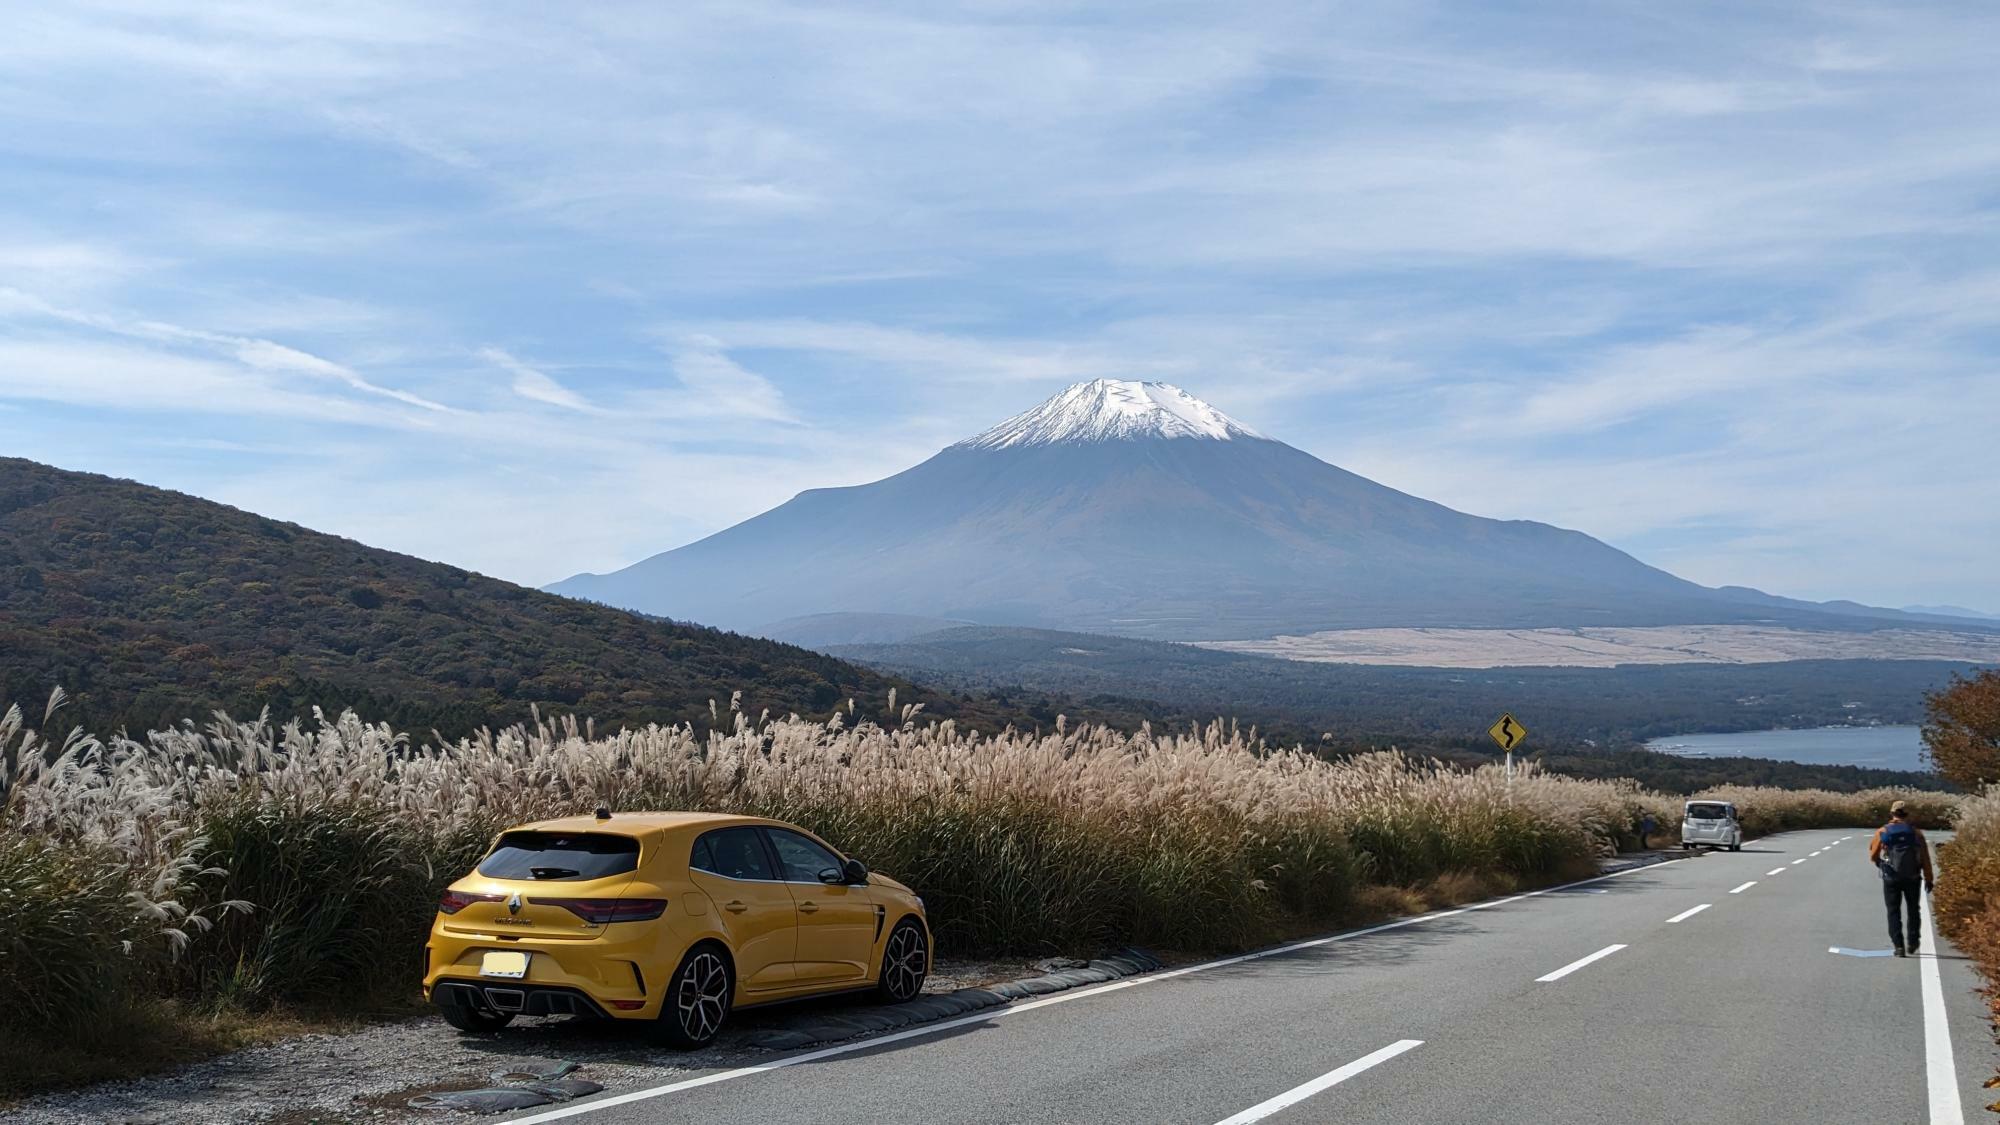 富士山と山中湖が同時に見られる「パノラマ台」の近くで。自家用車と山を愛でた写真です。（本人提供）